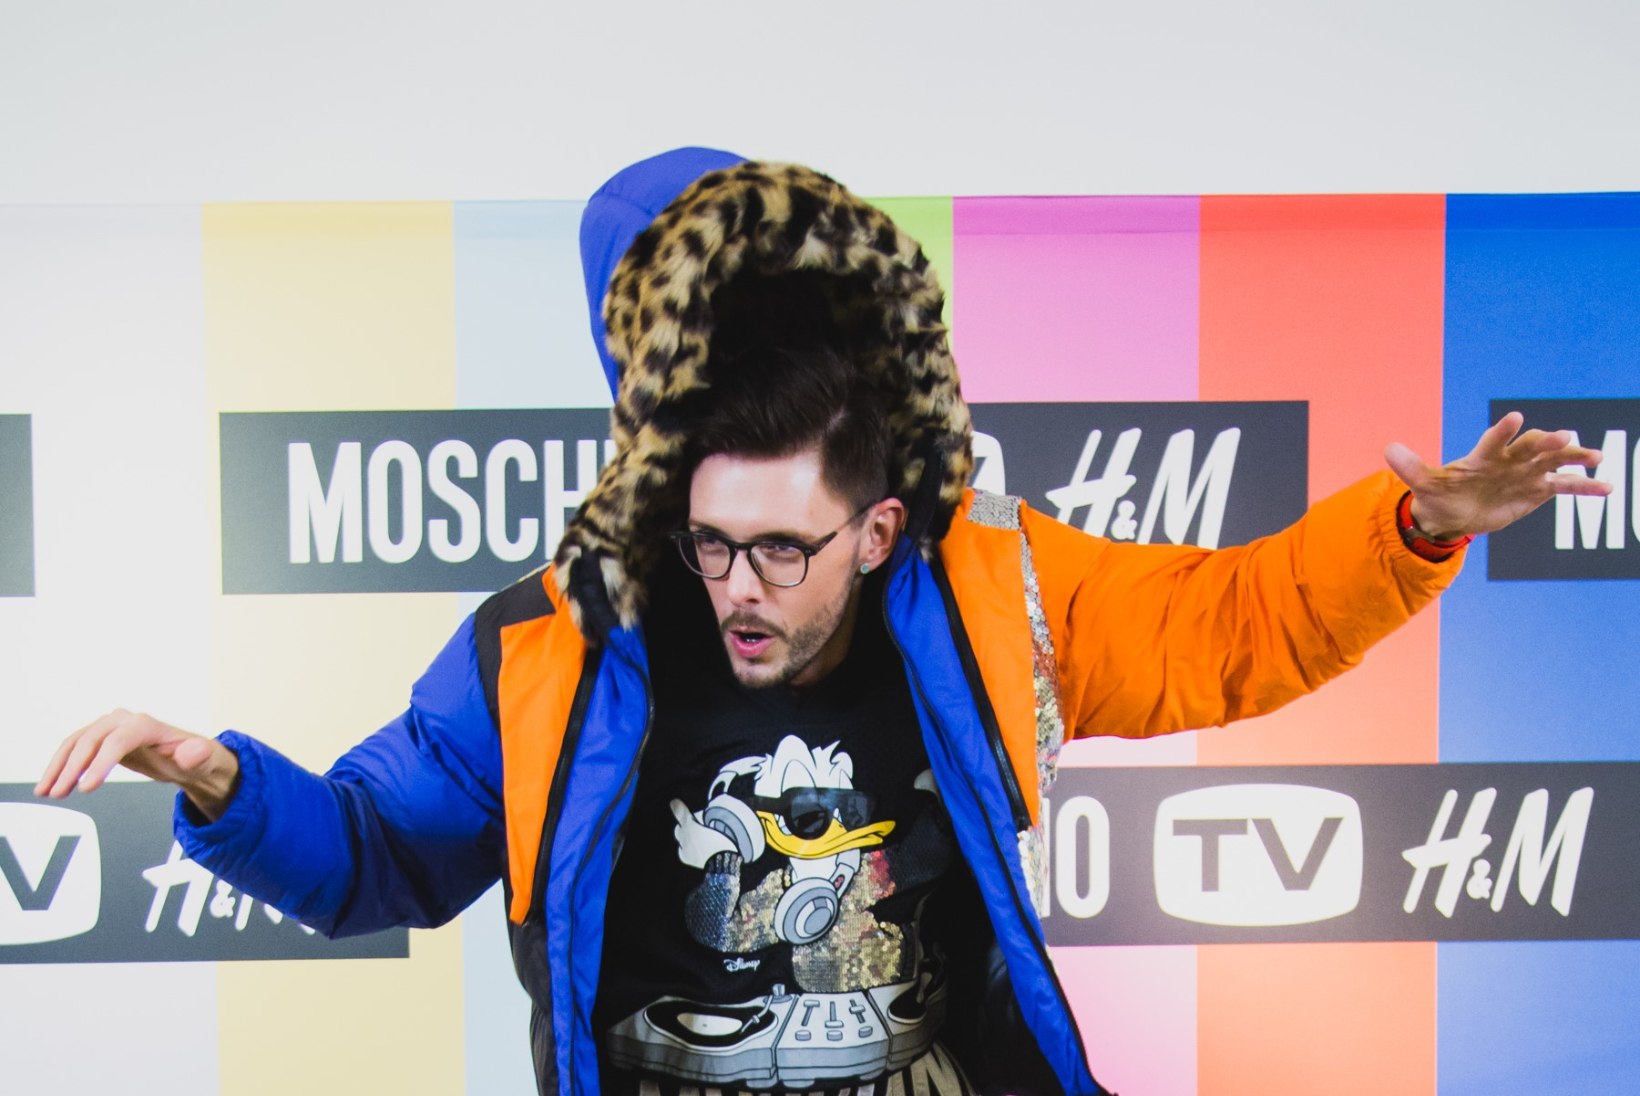 PILDID | Eesti moehoolikud möllasid Moschino pöörase TV H&M kollektsiooniga